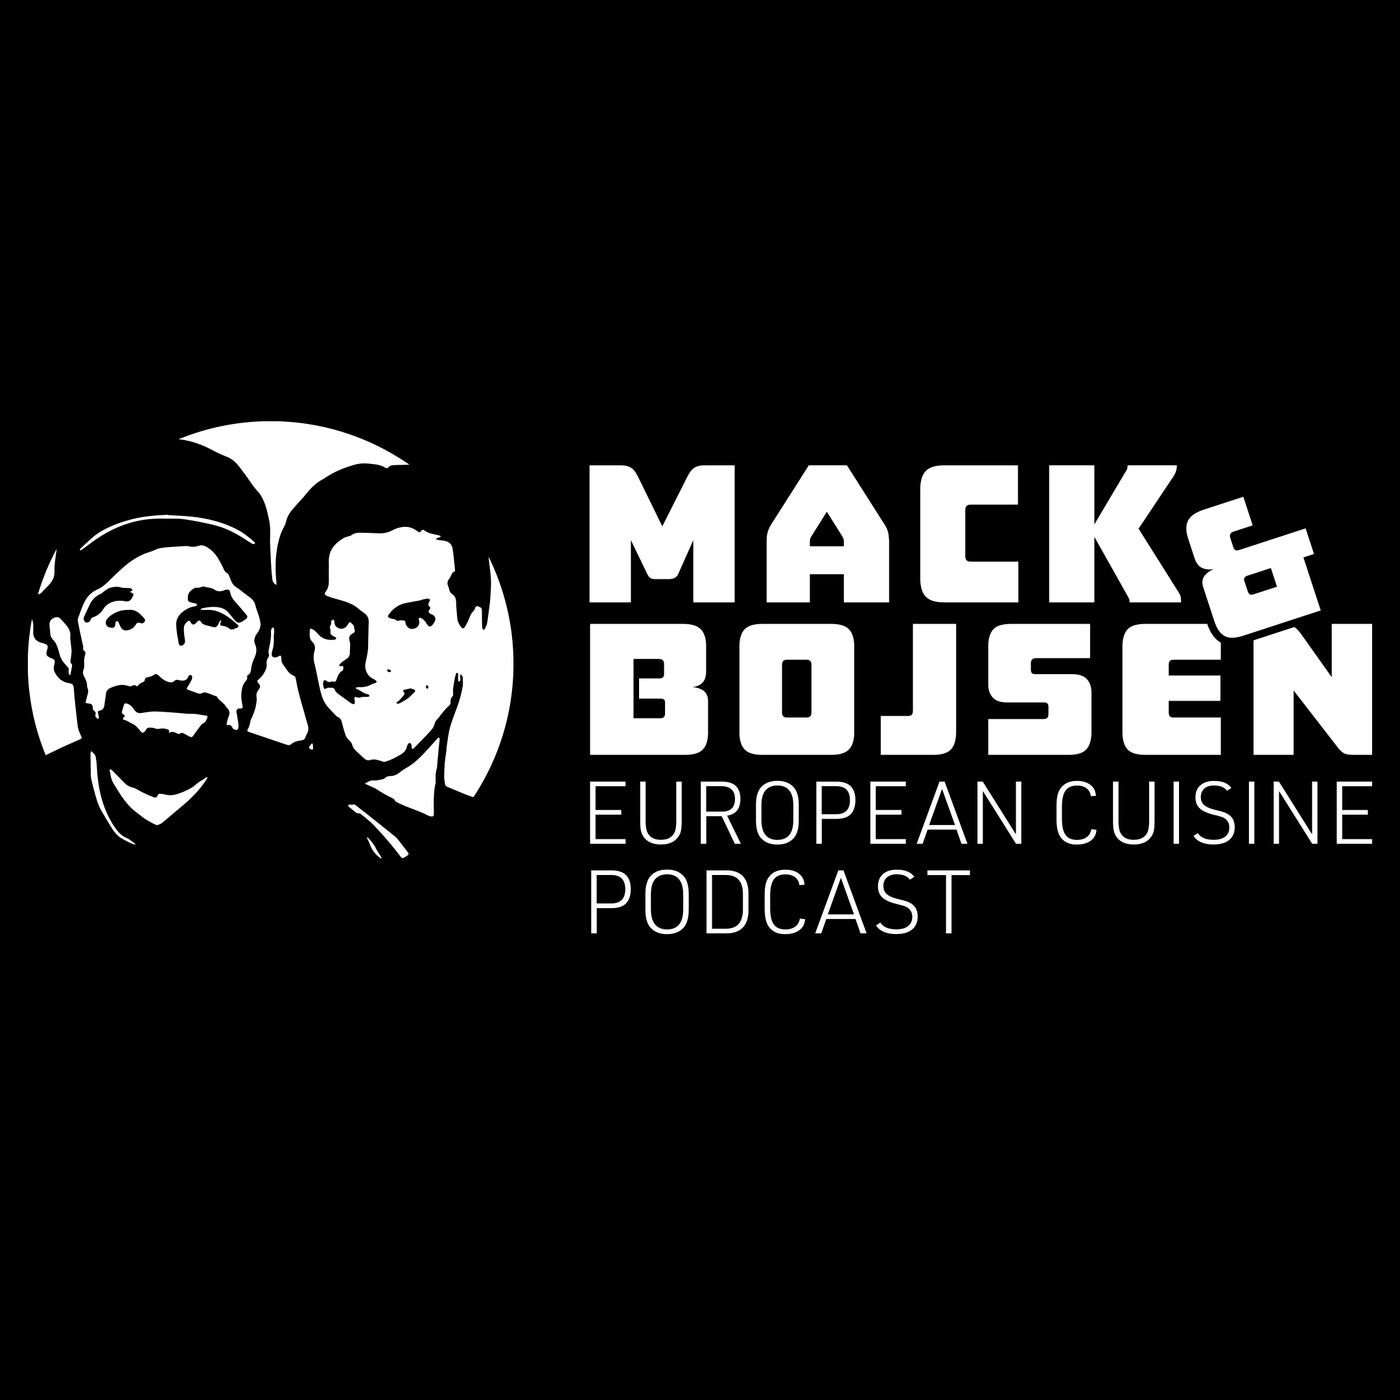 Der Geschmack Skandinaviens: Mack & Bojsen und die arktische Küche Lapplands - Teil 2